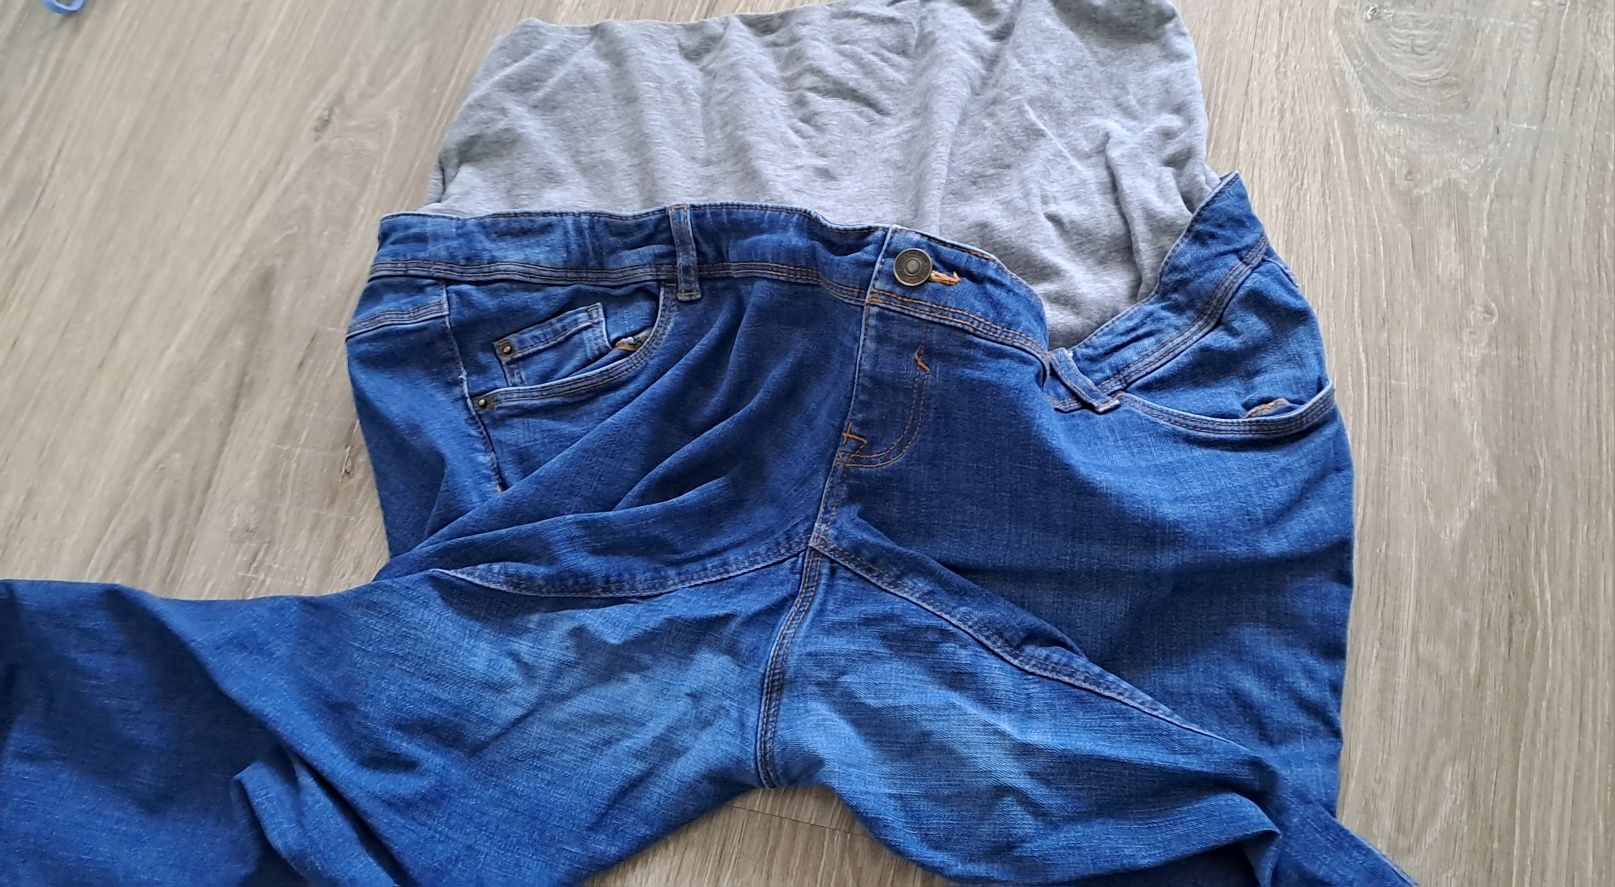 Spodnie jeansowe C&A